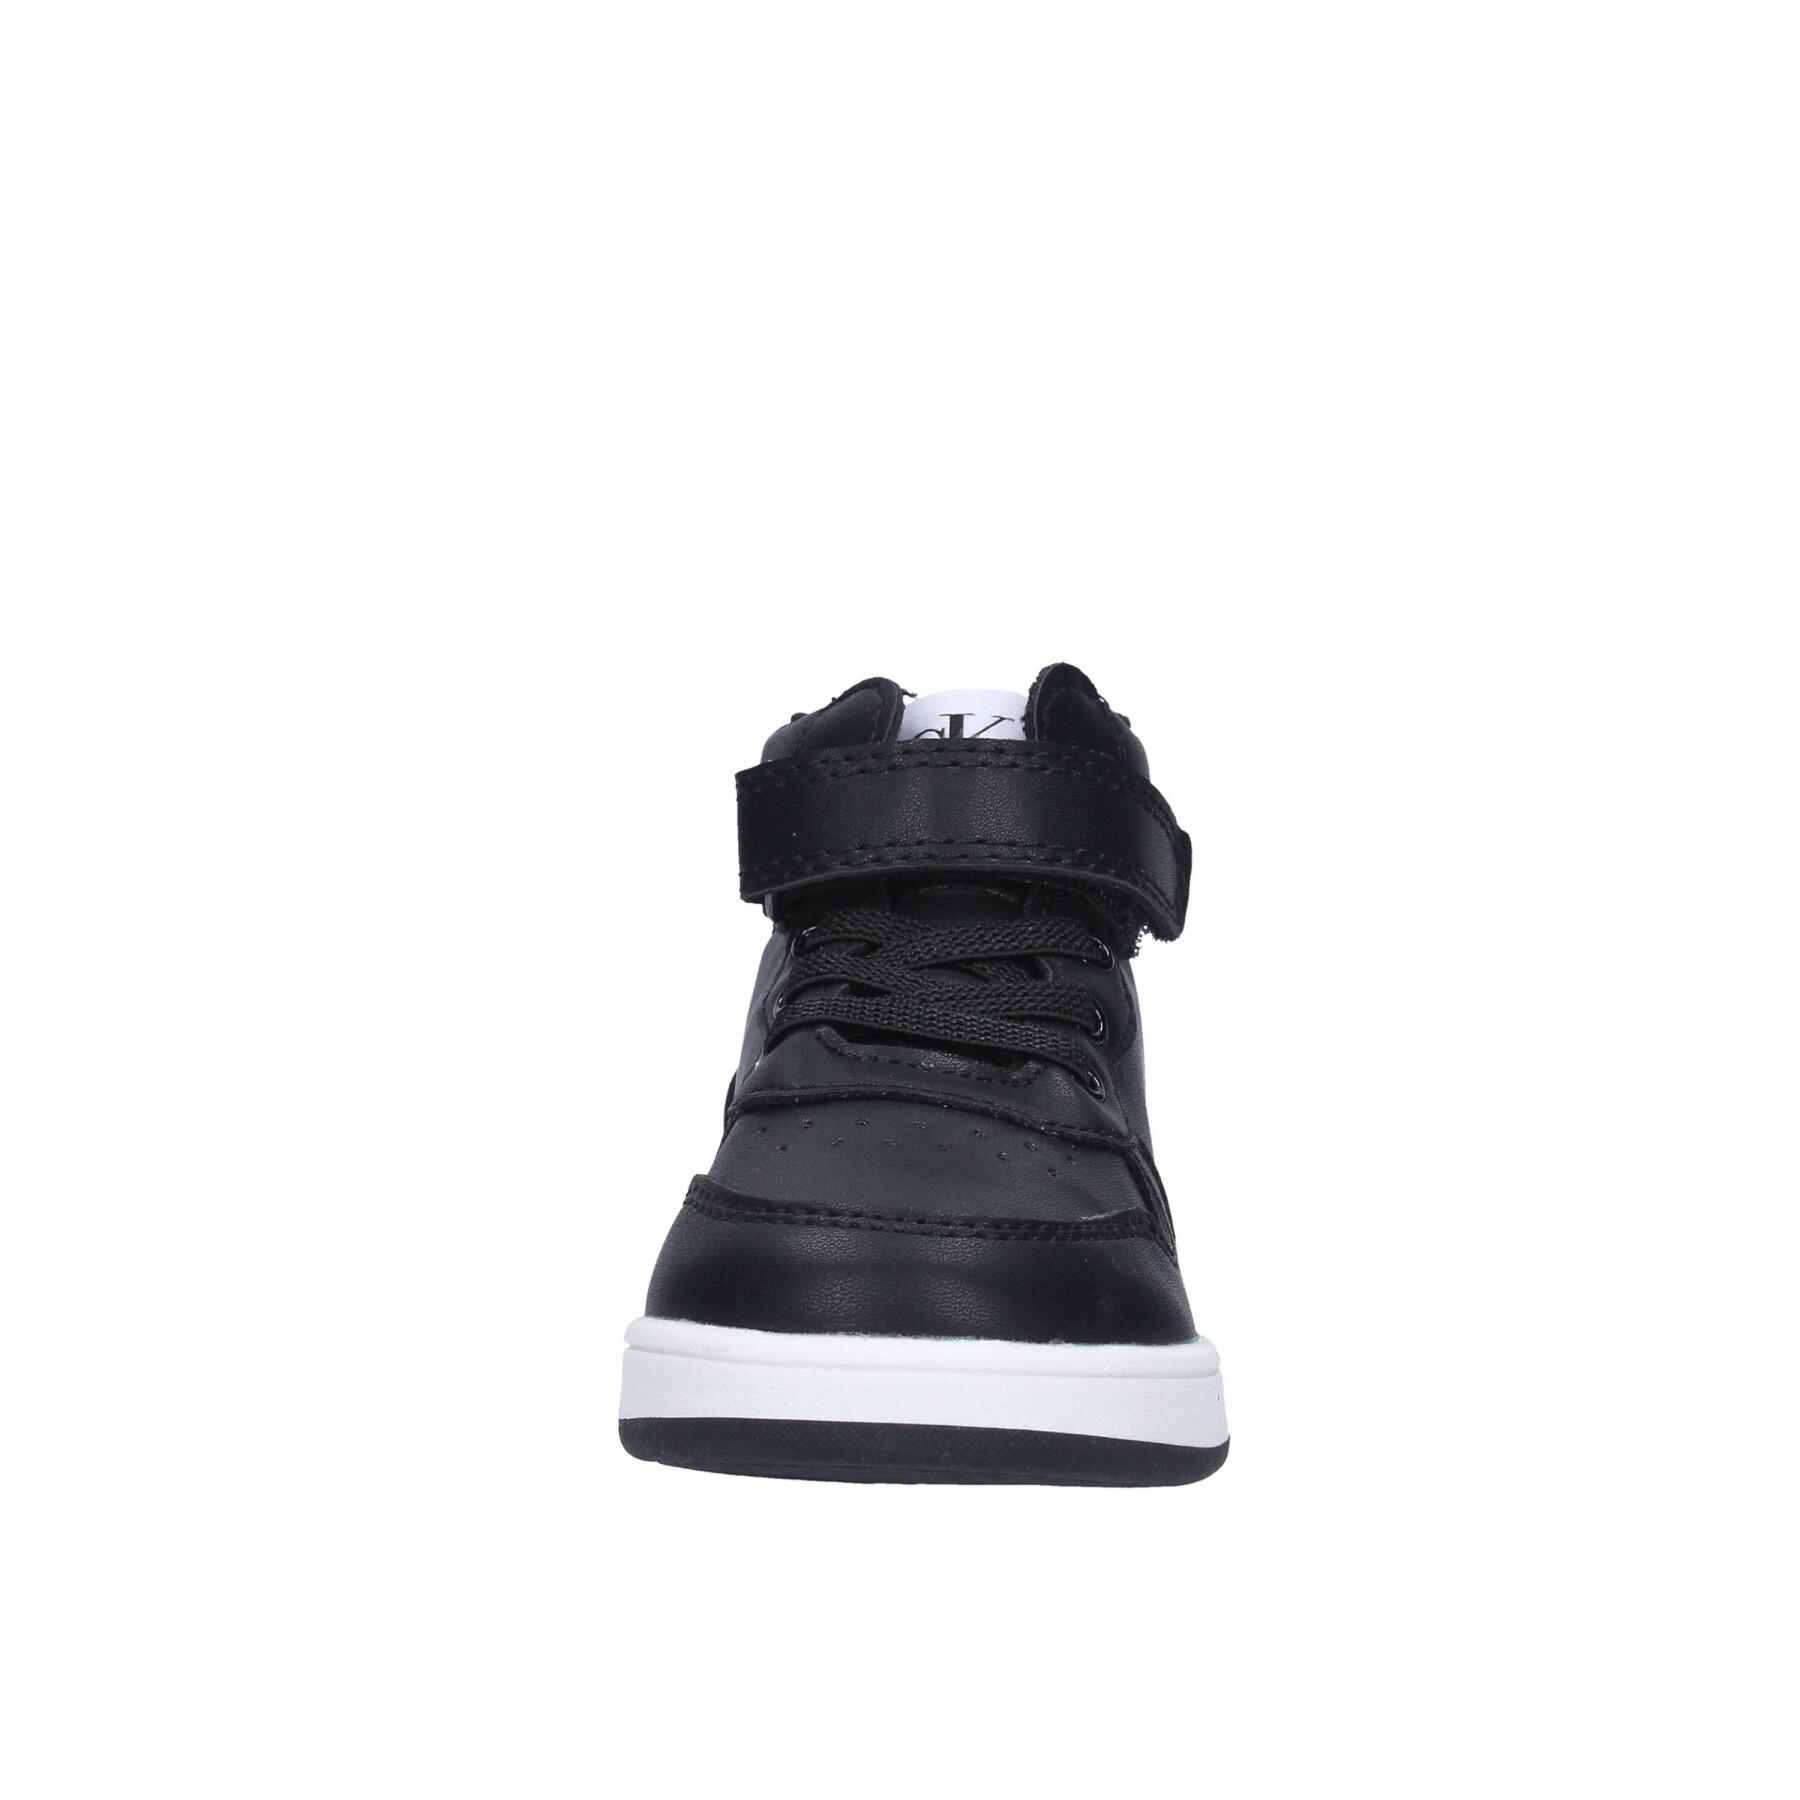 Zapatillas de deporte con cordones/velcro para niños Calvin Klein black/white